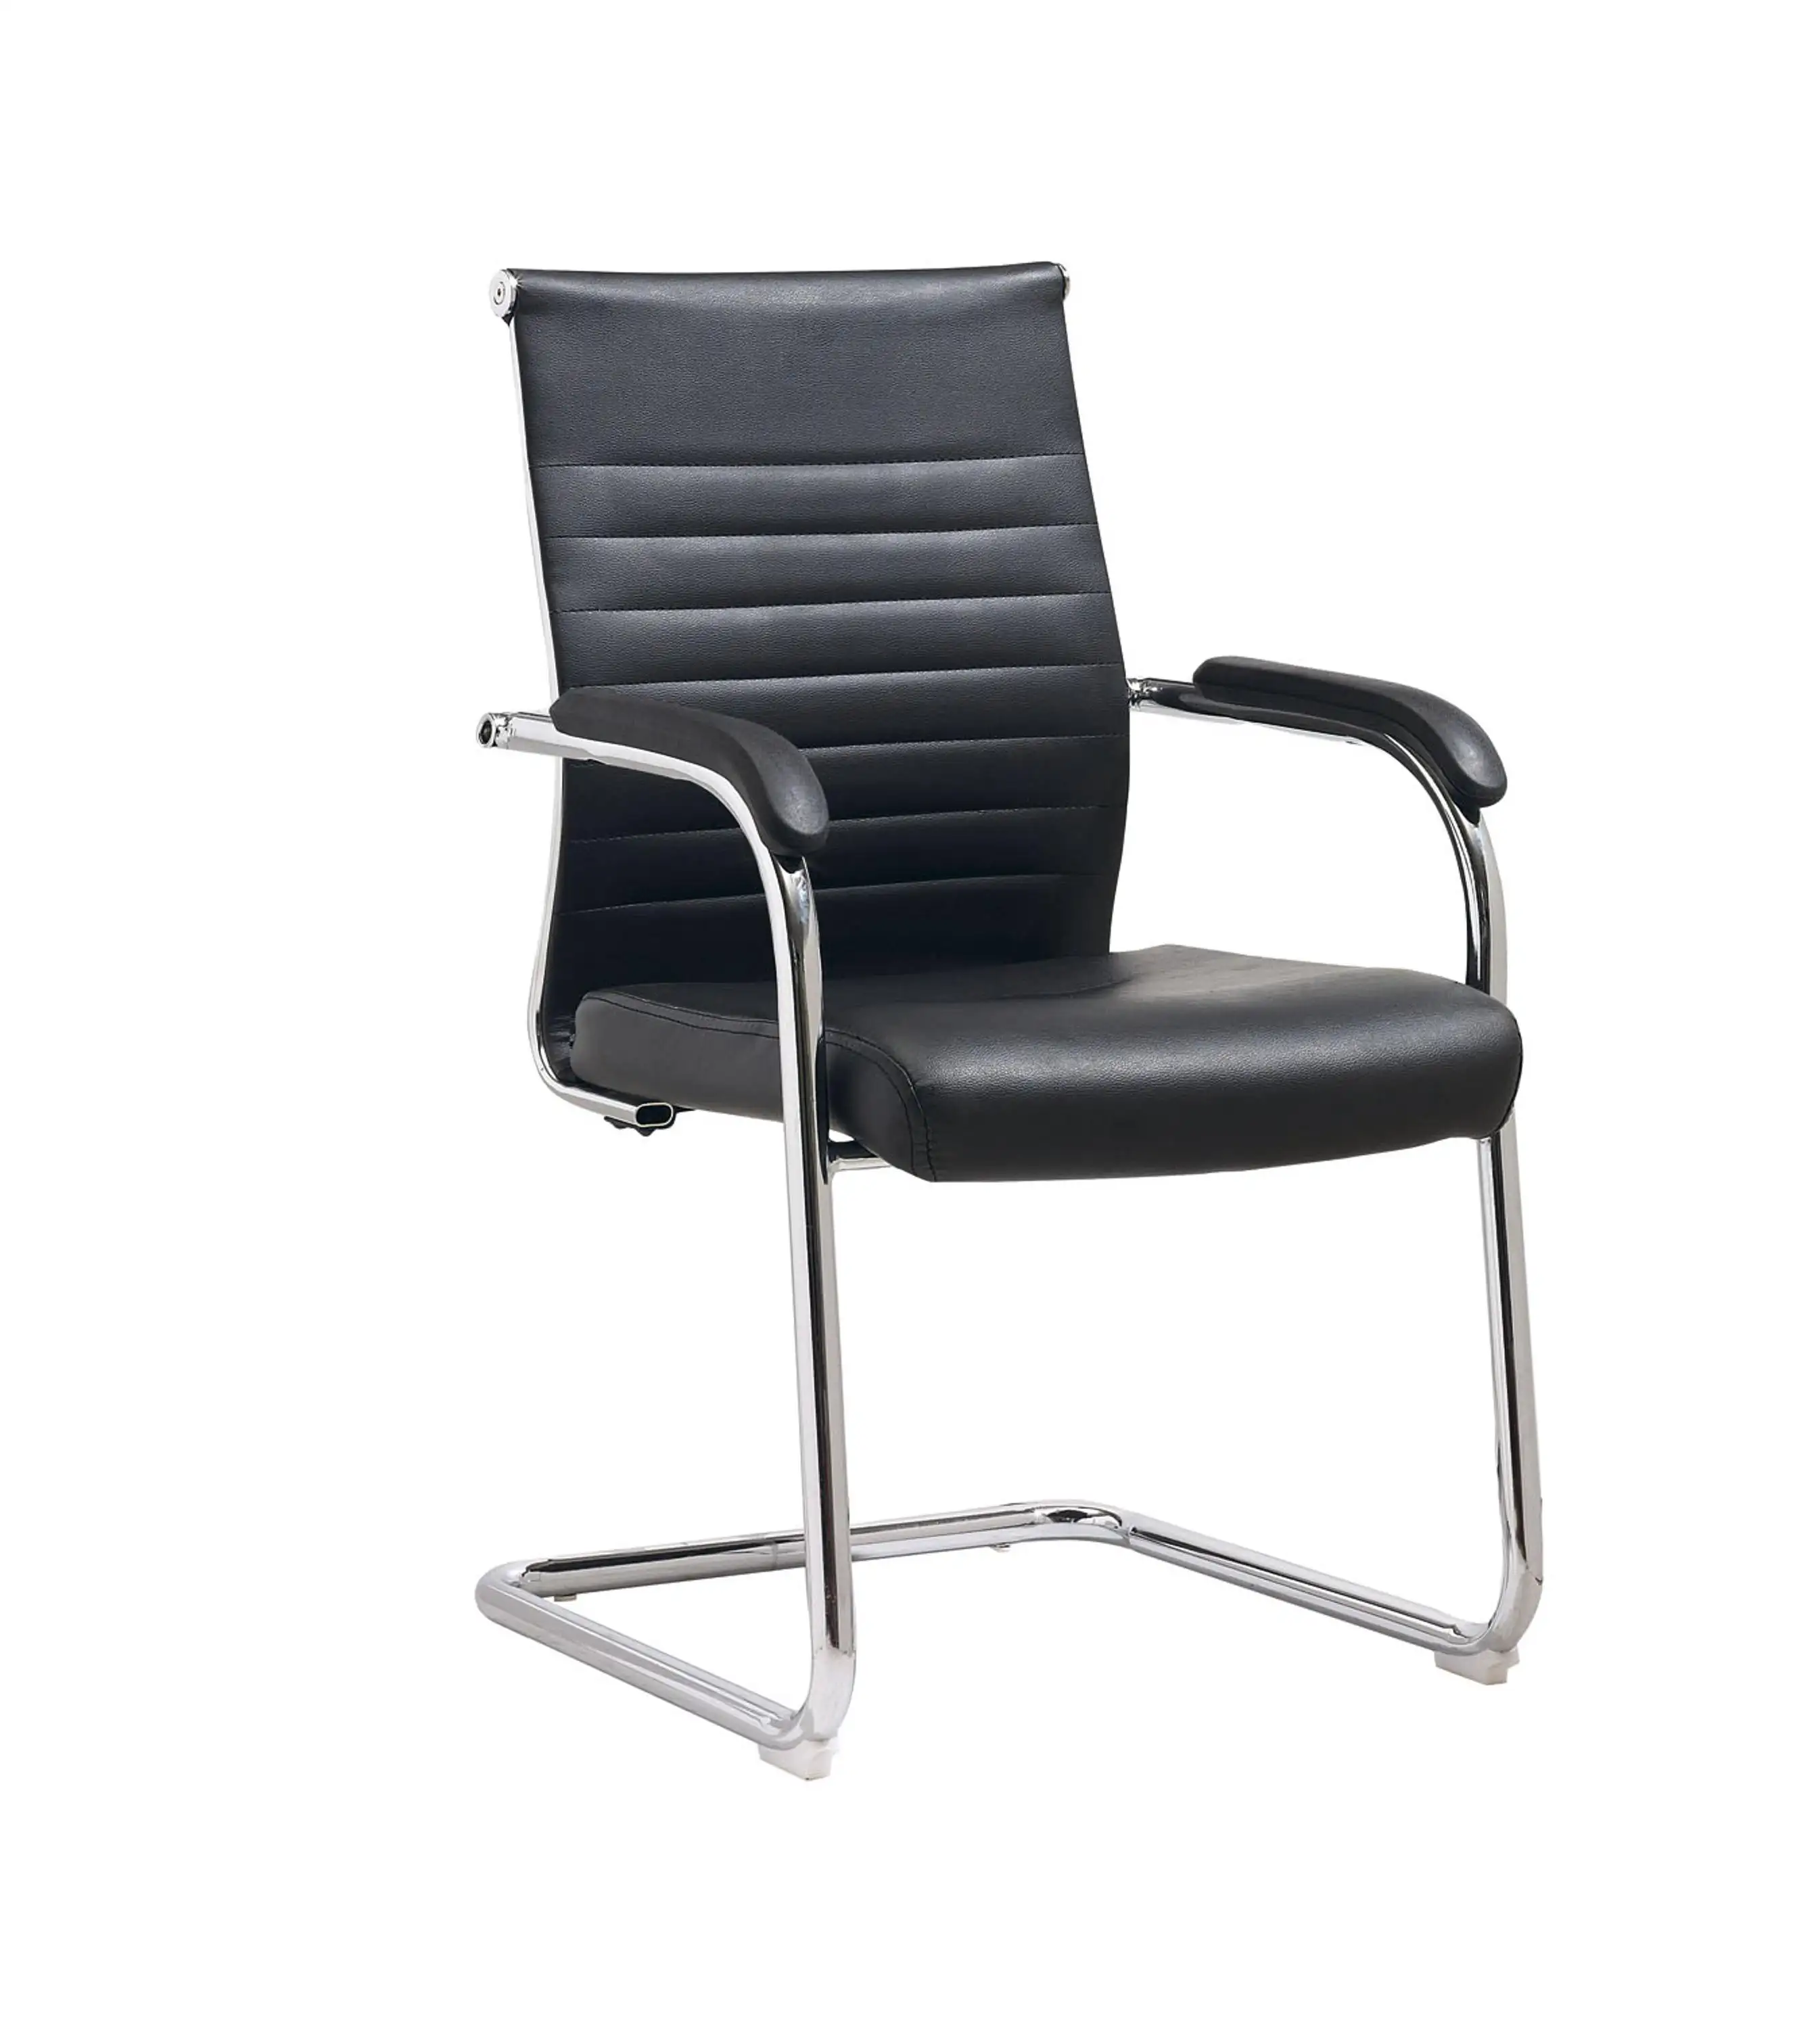 W640-2PU стул для посетителей руководителя с фиксированной рамой со средней спинкой кожаный офисный стул